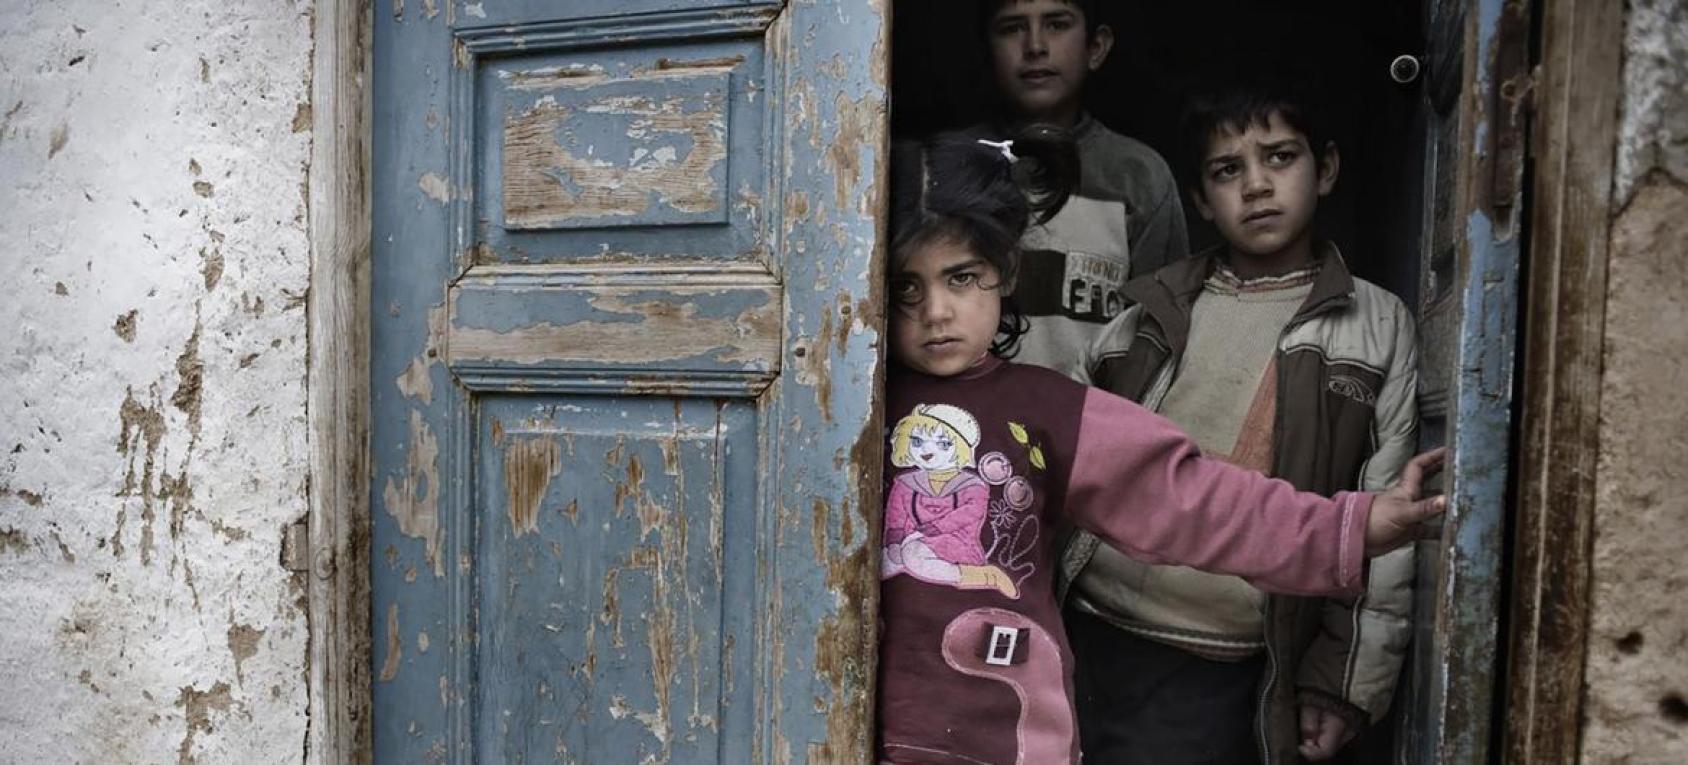 Une petite fille et deux petits garçons se tiennent debout, le regard triste, sur le pas d'une vieille porte bleue délabrée.